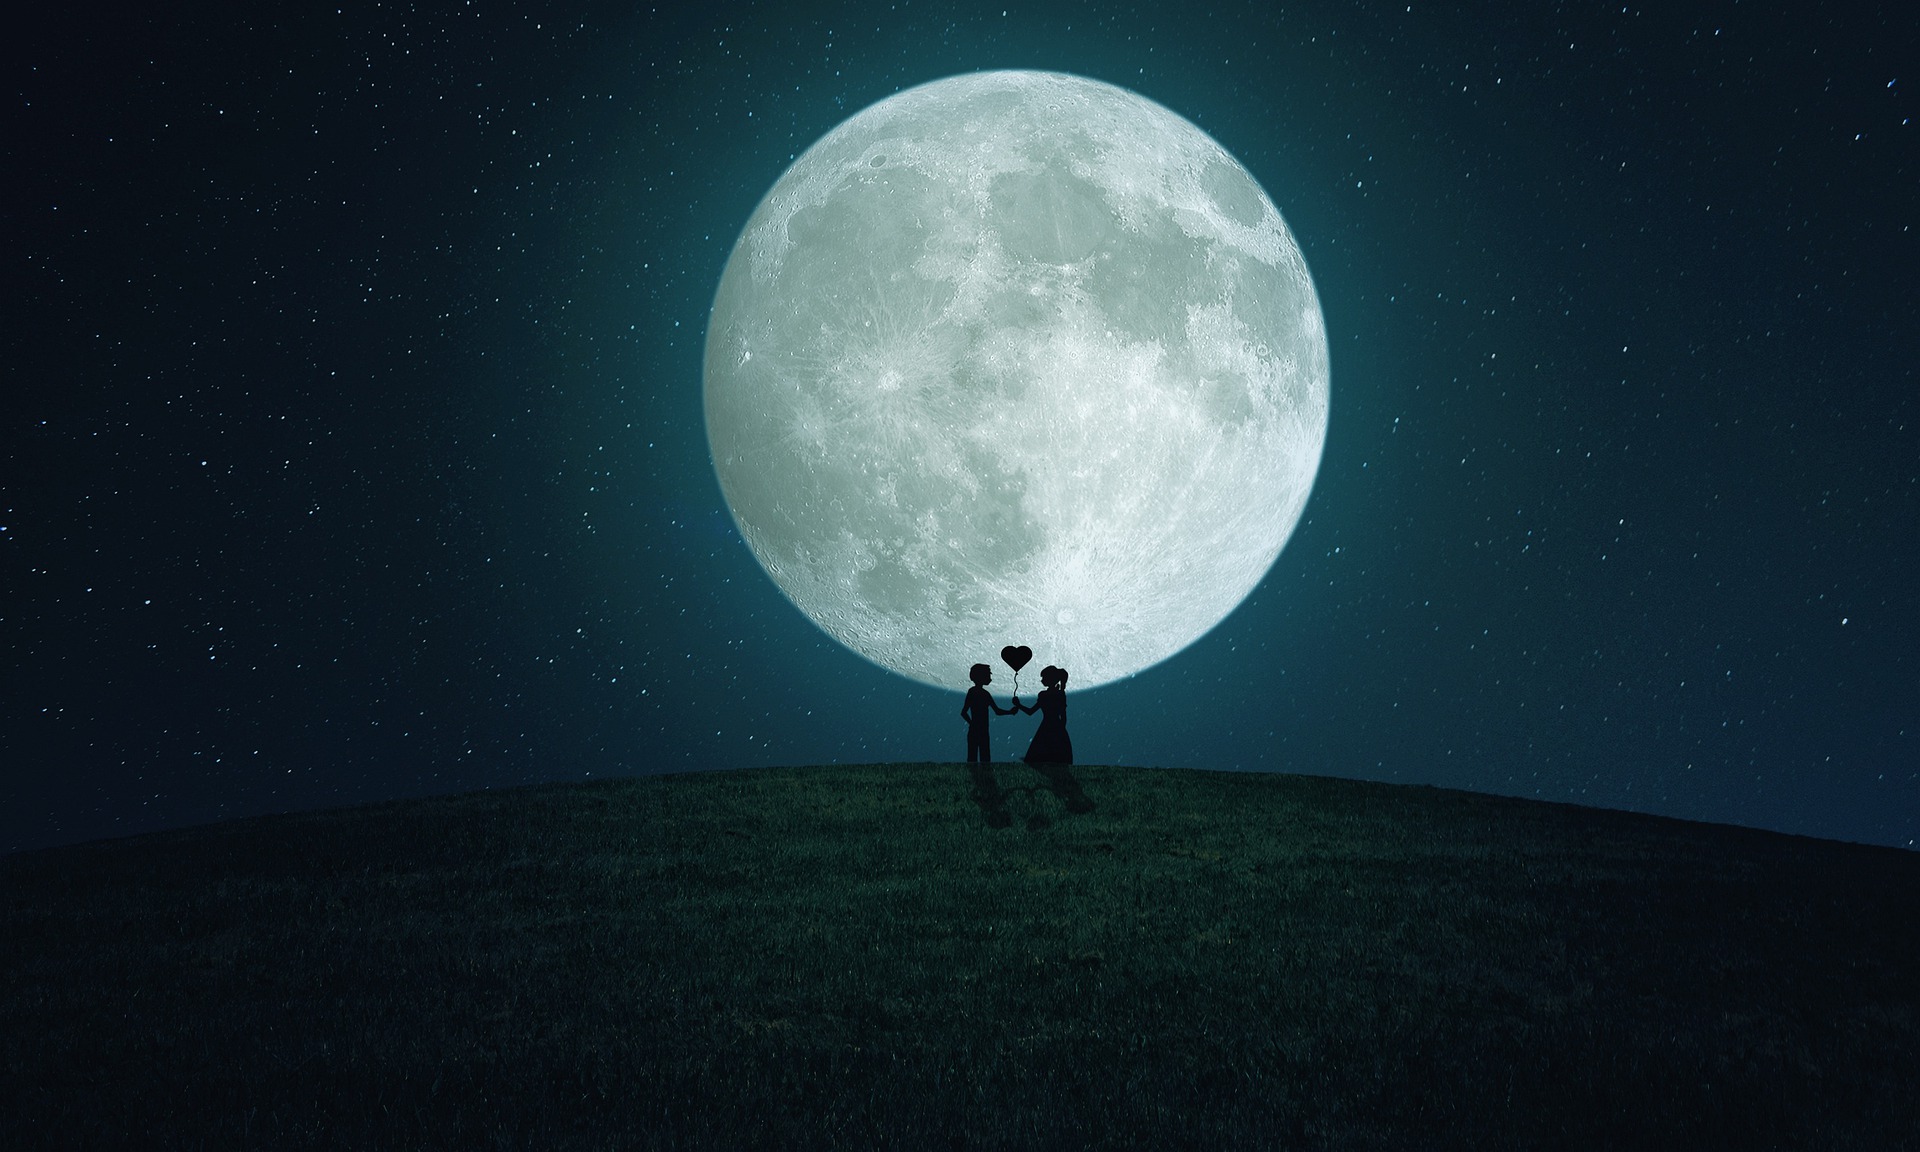 Destinazioni per la vostra luna di miele. Due innamorati davanti alla luna enorme.